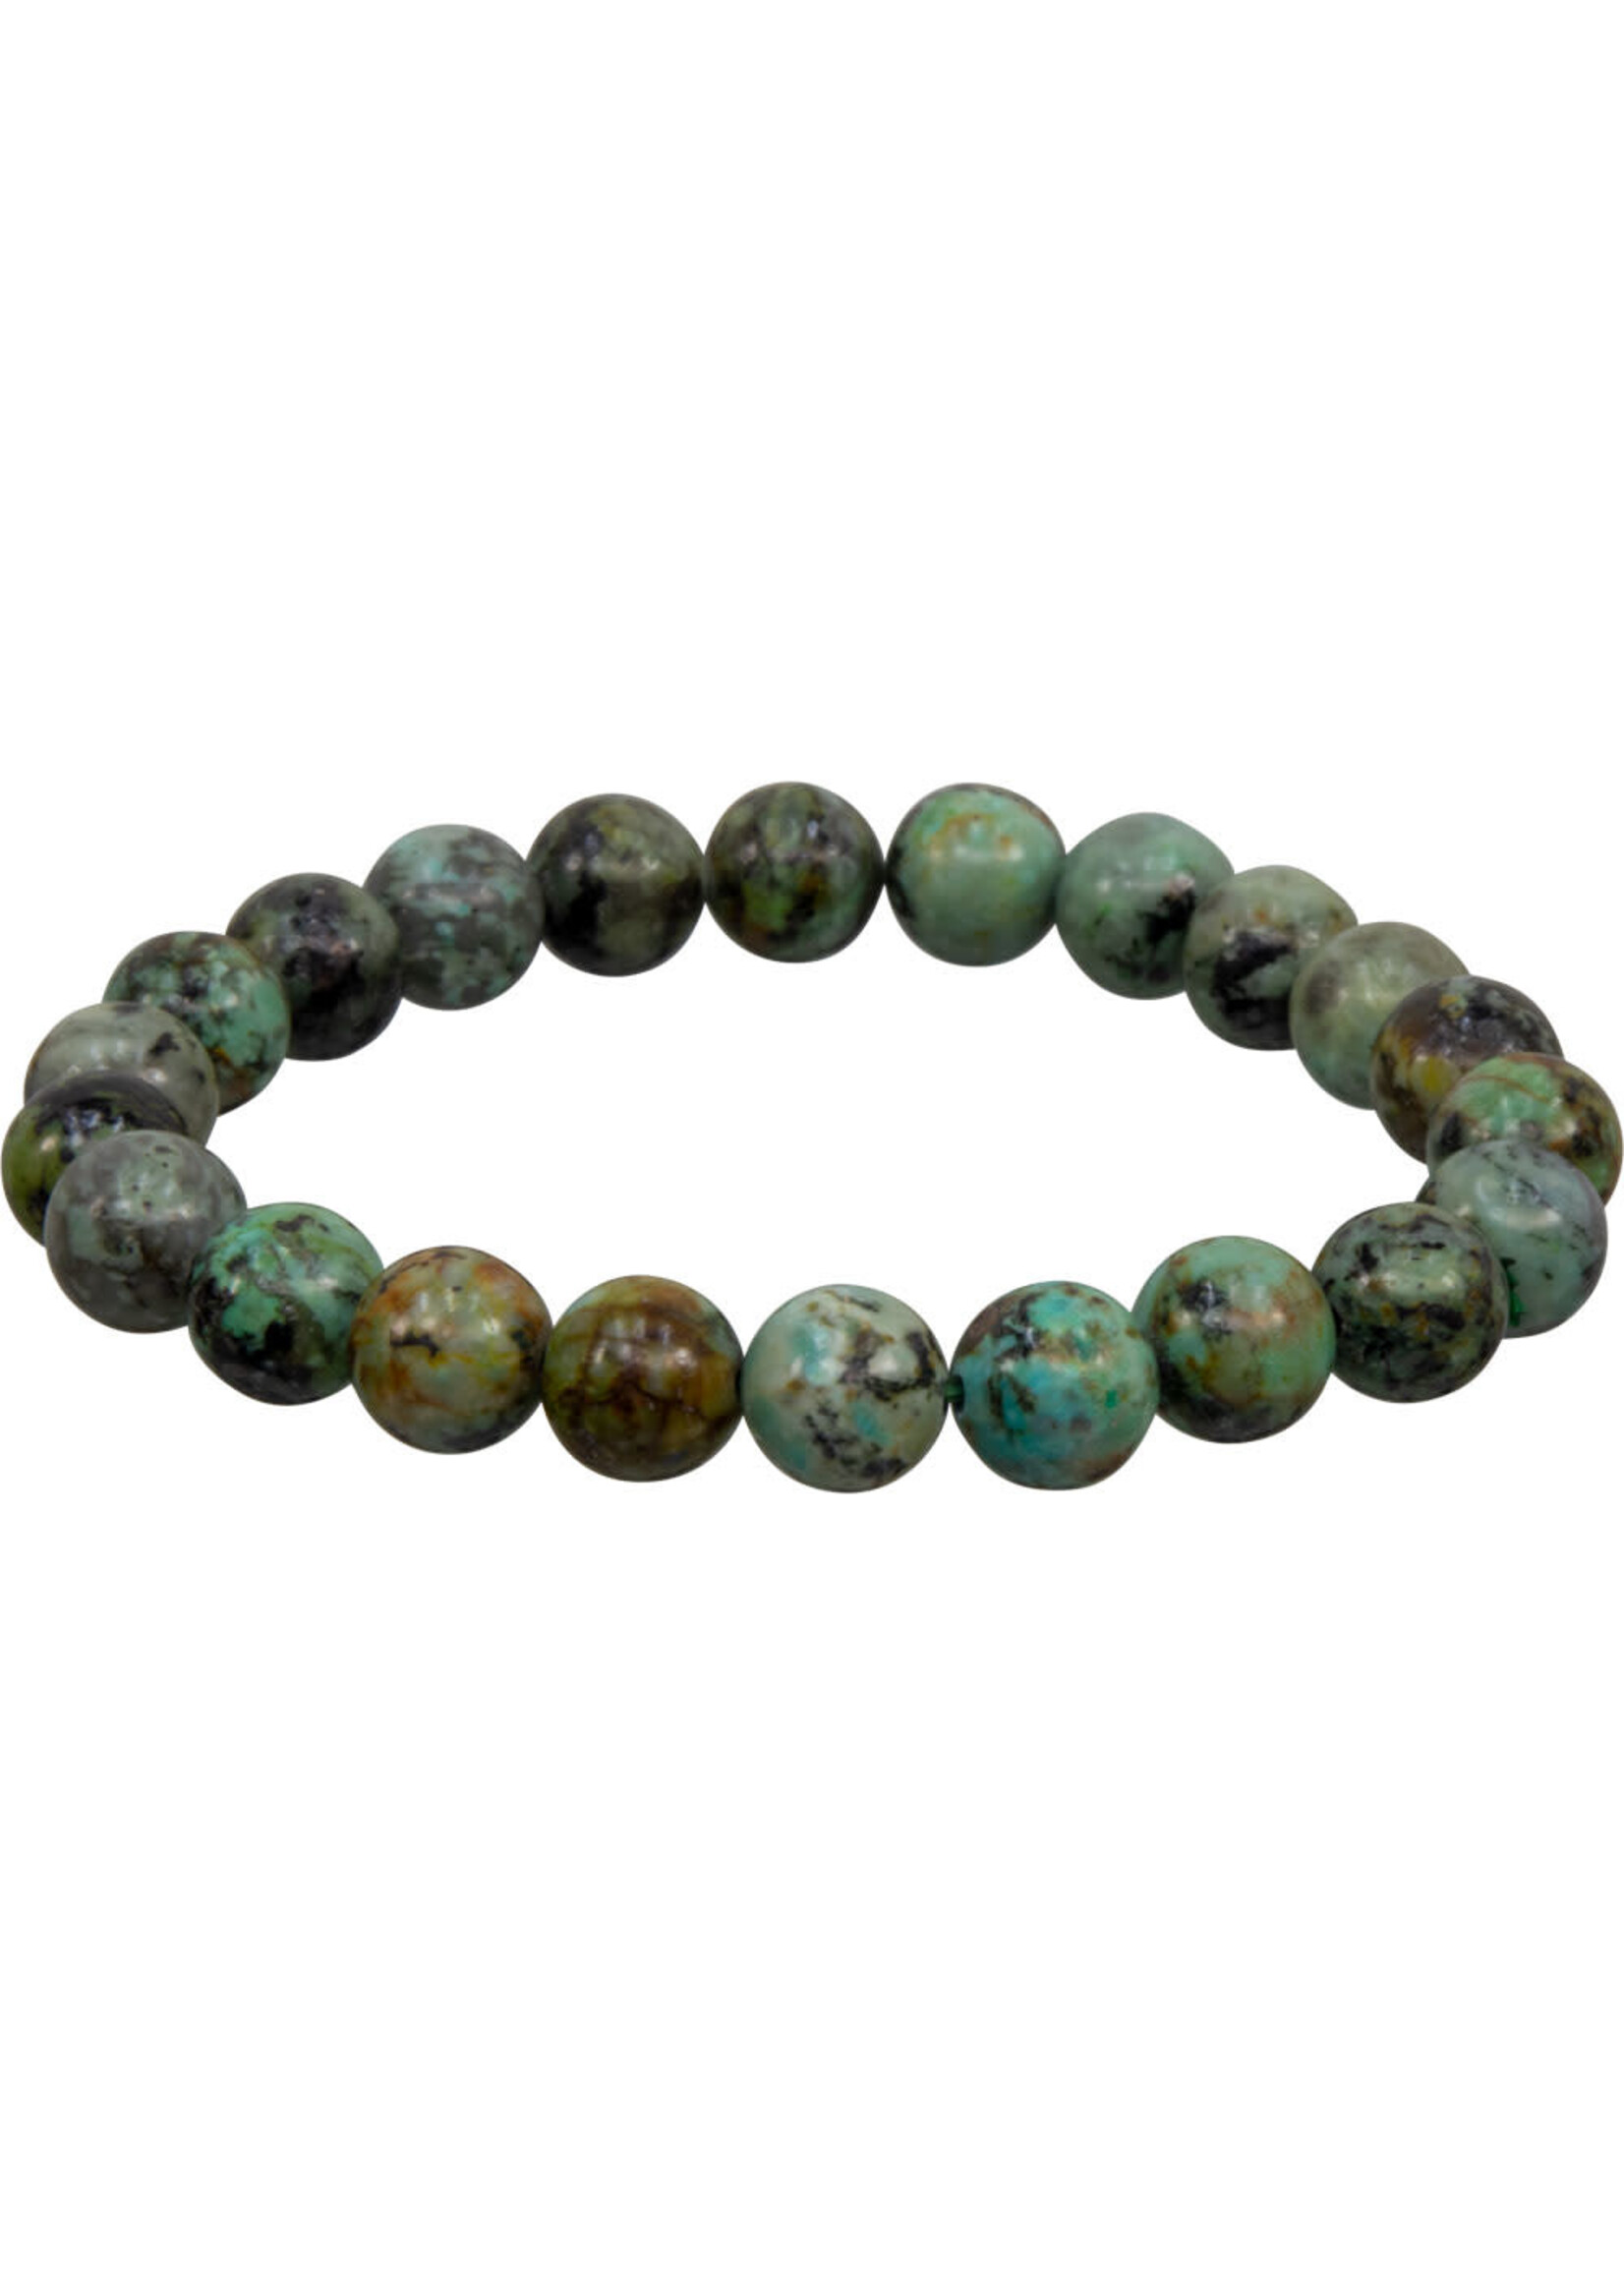 8 mm Elastic Stone Bracelet - African Turquoise Jasper